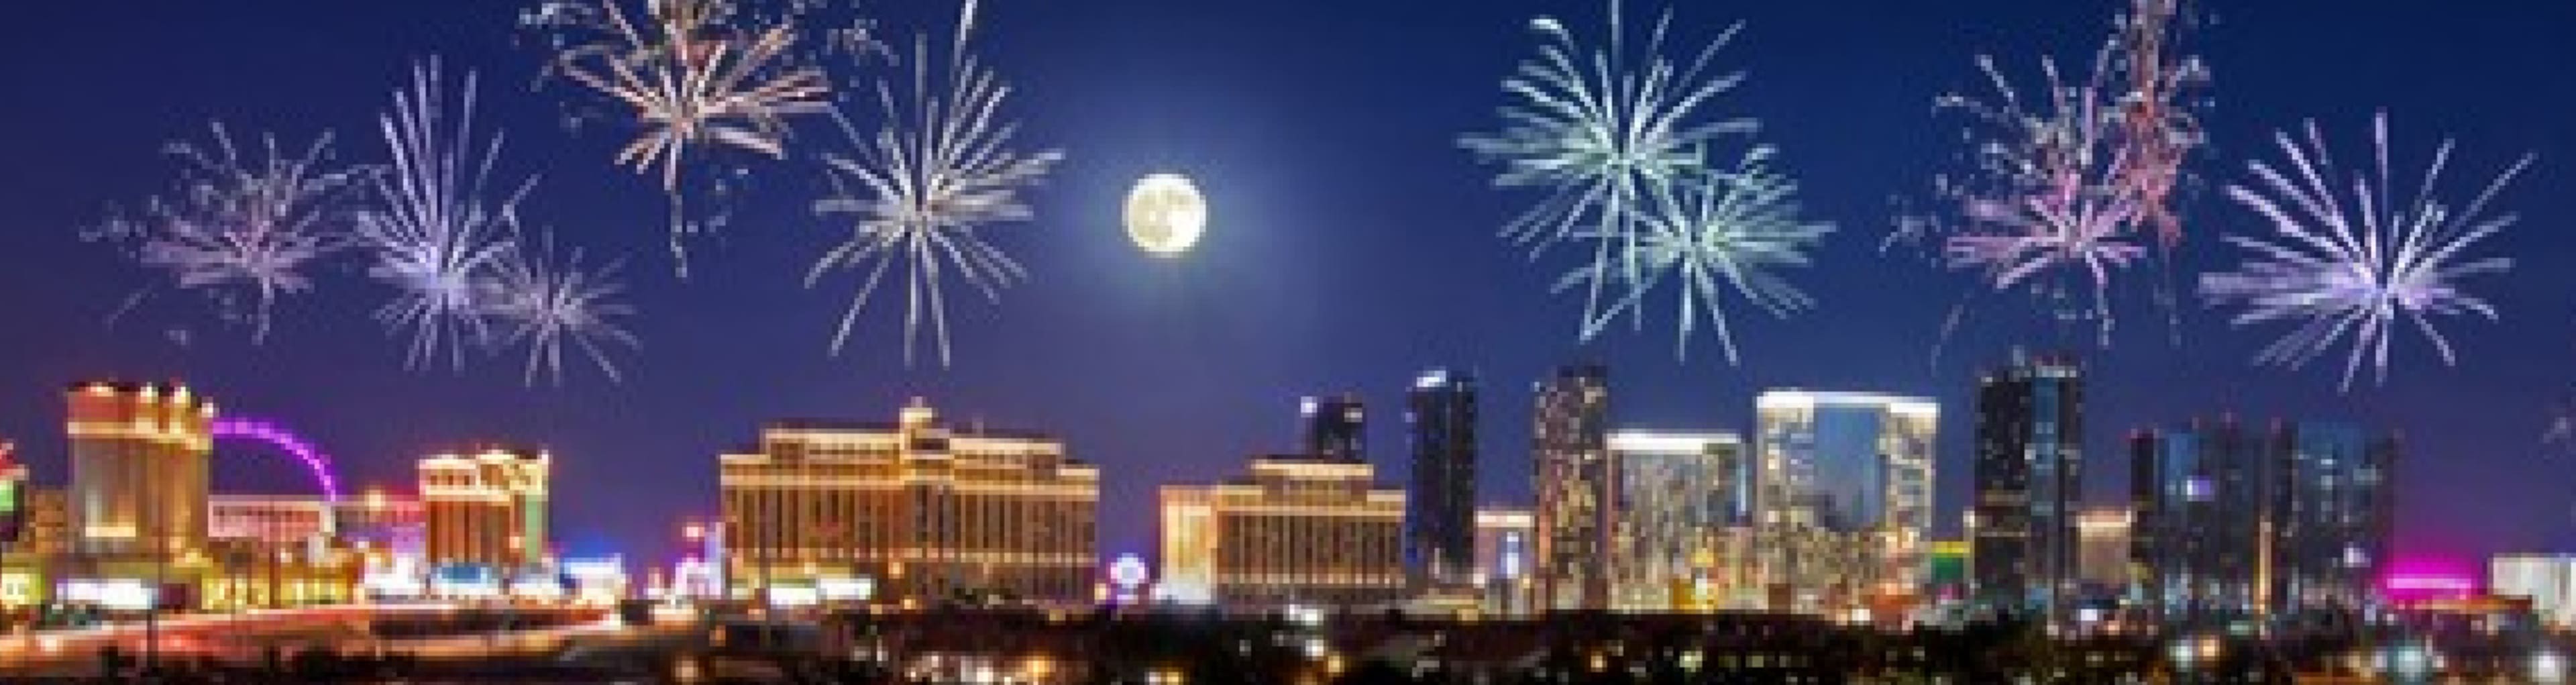 Vegas skyline with fireworks